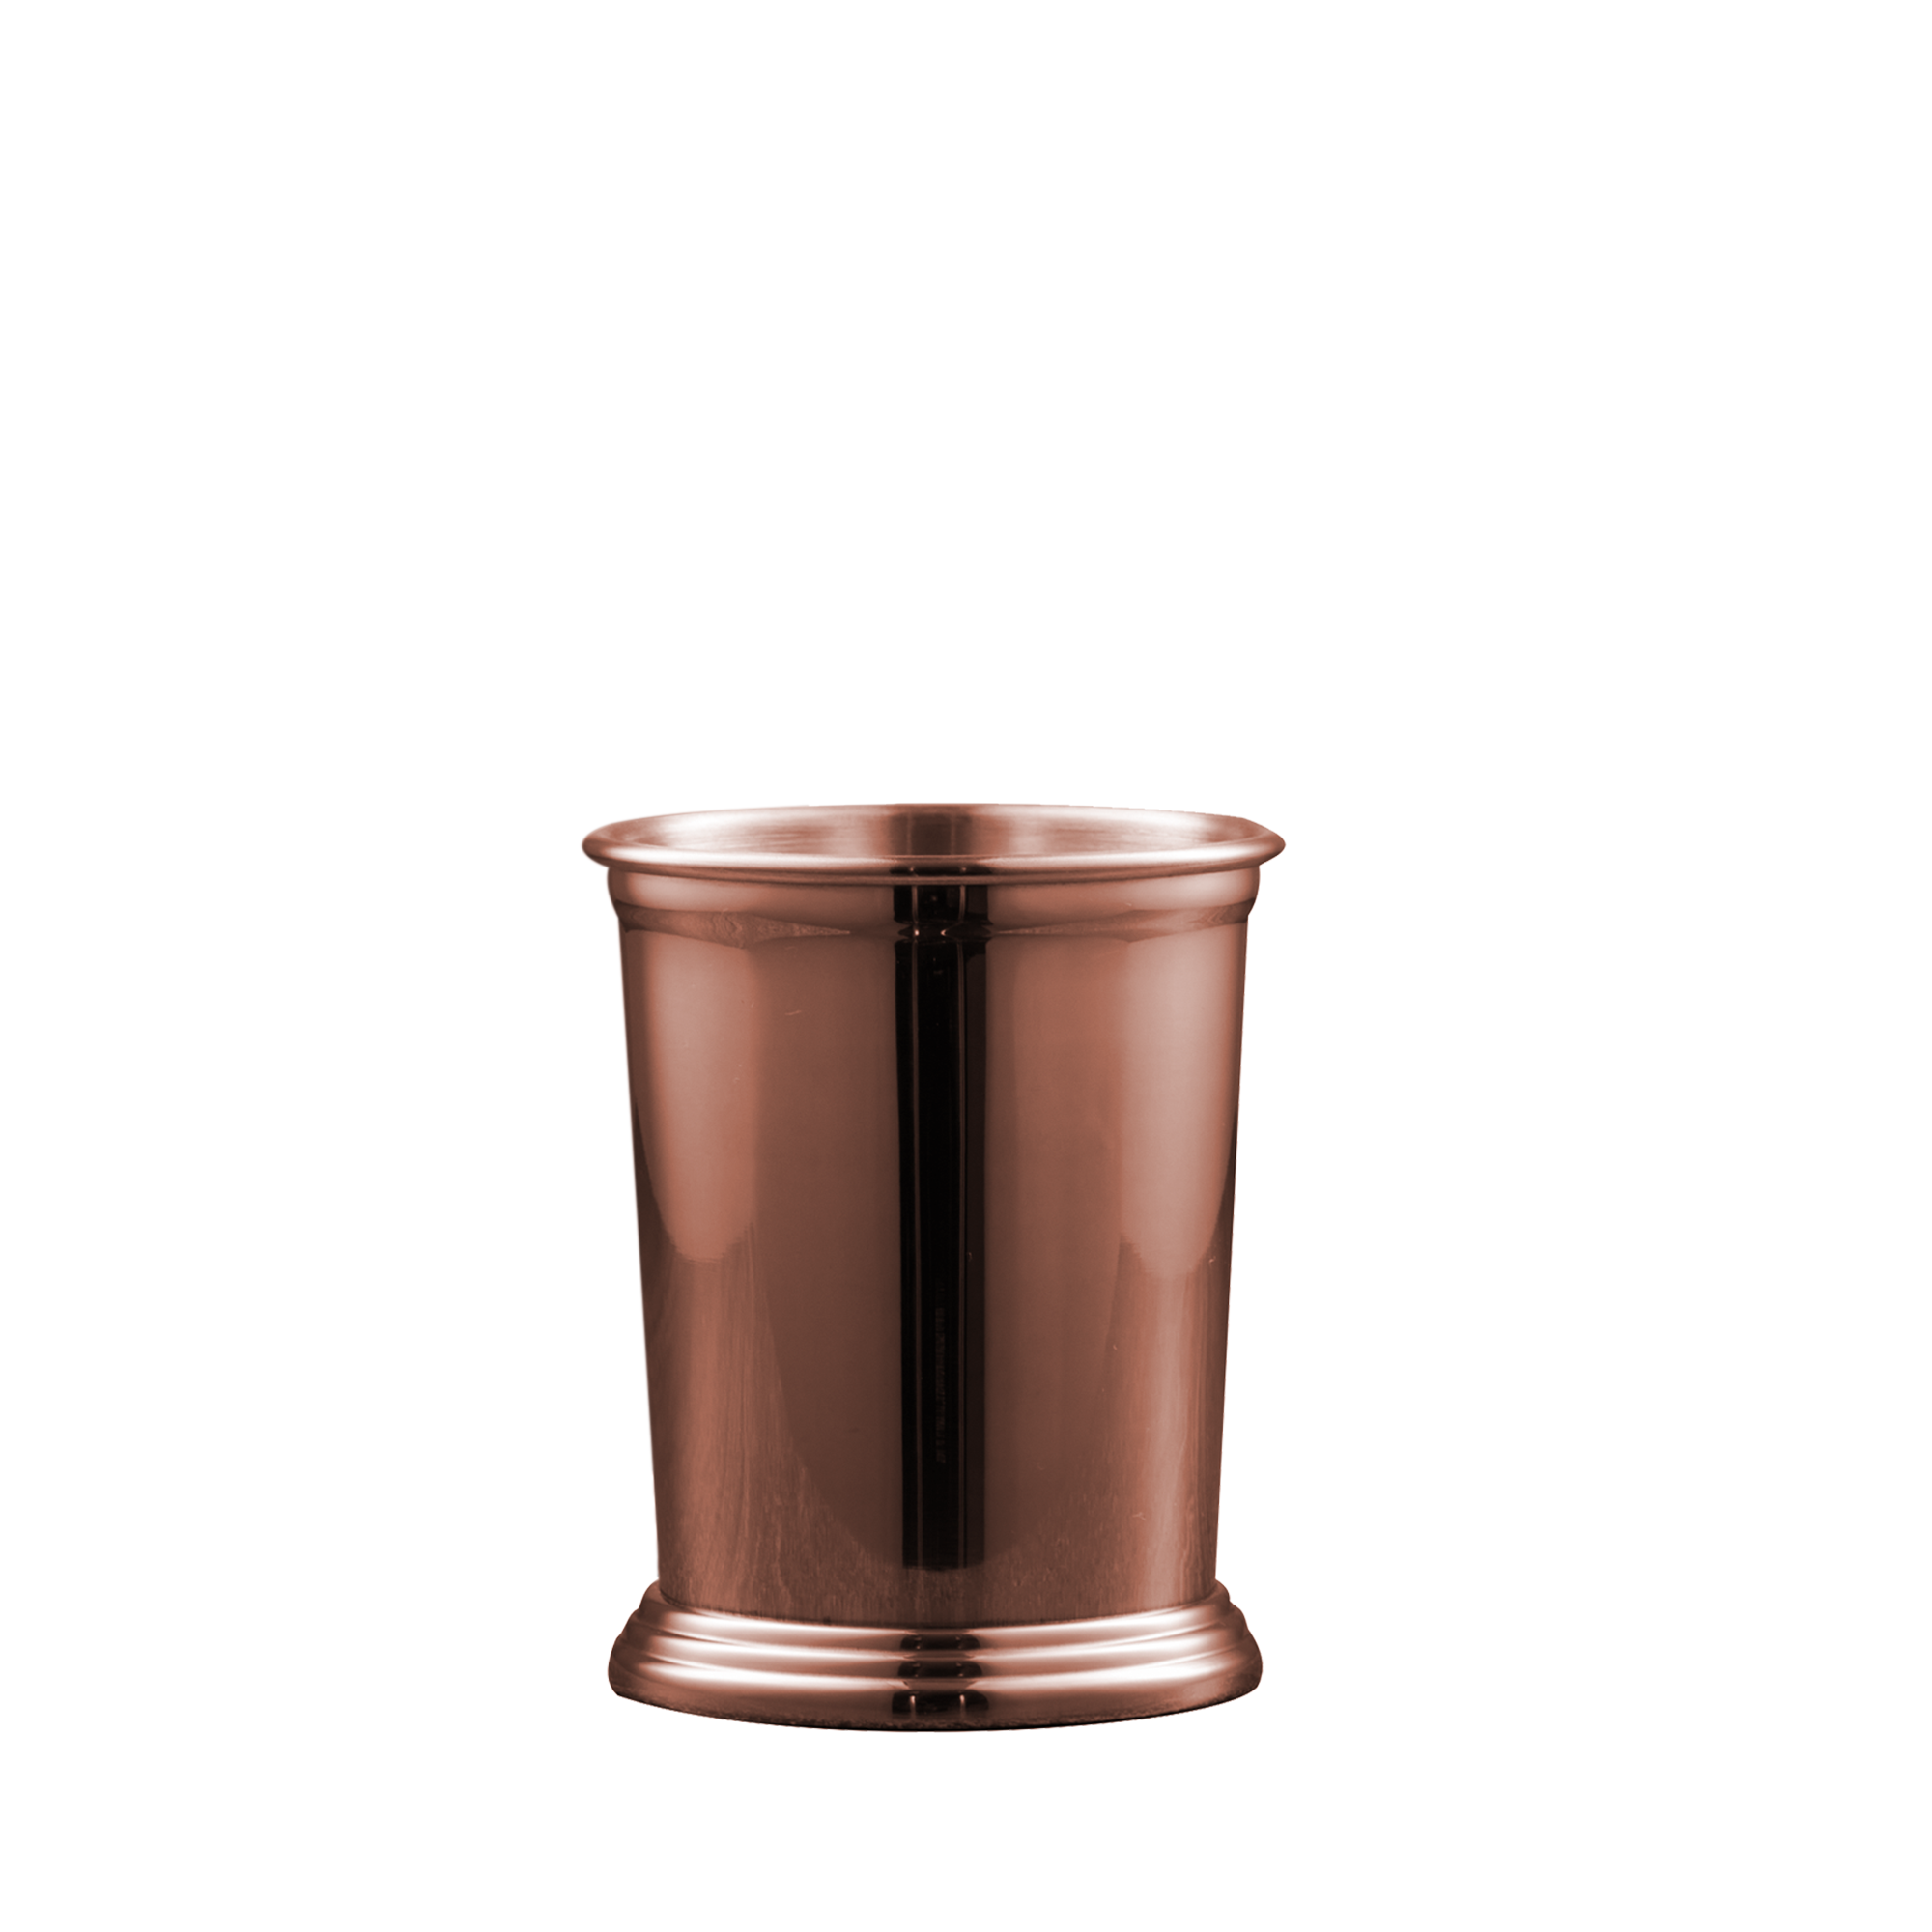 Julep Cup Copper